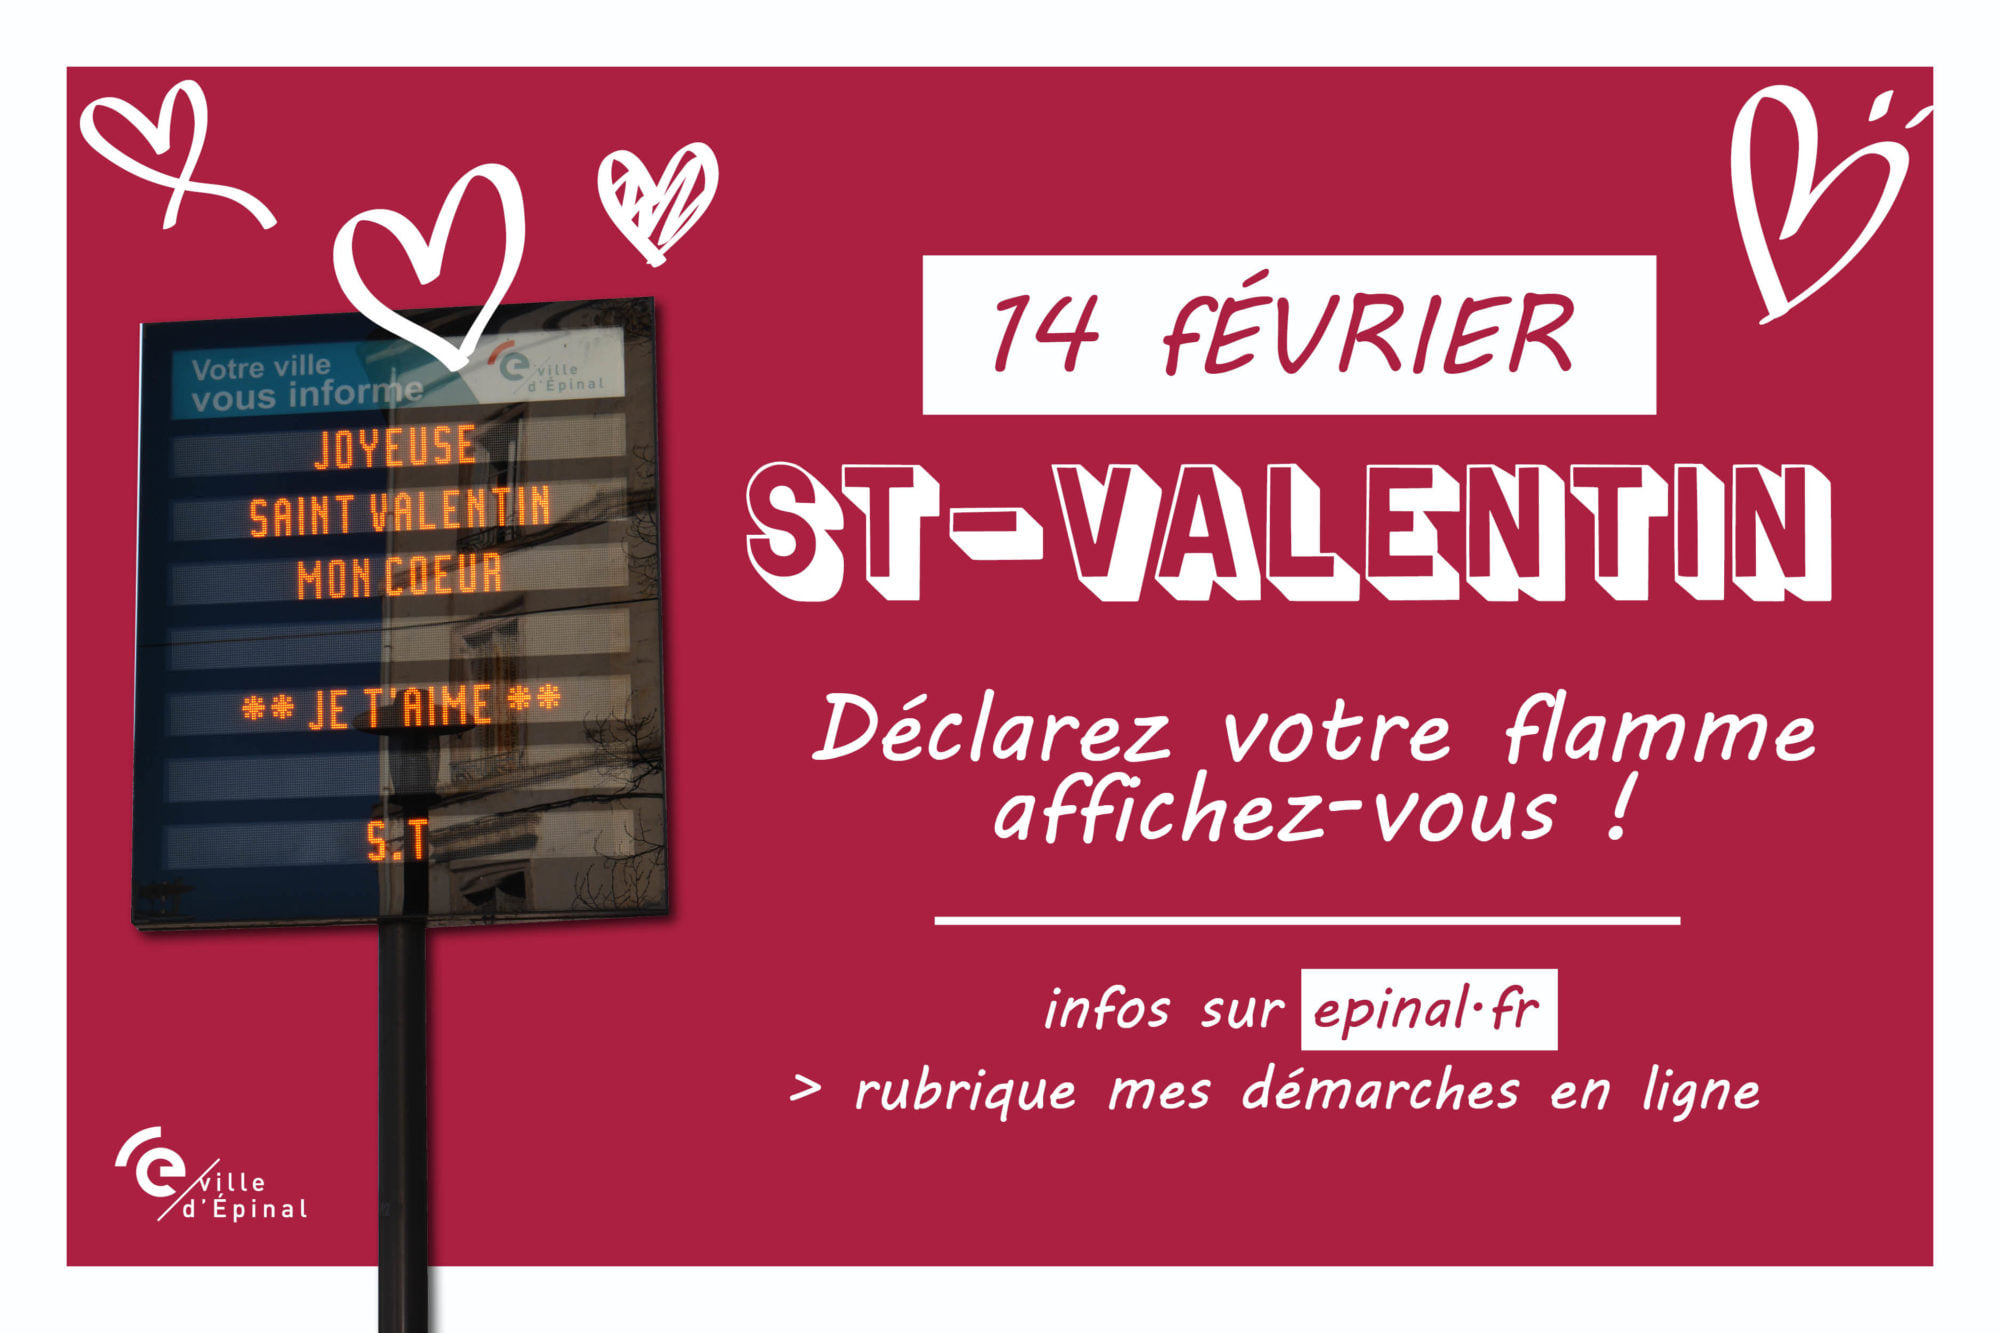 St-Valentin : déclarez votre flamme sur les panneaux électroniques de la Ville